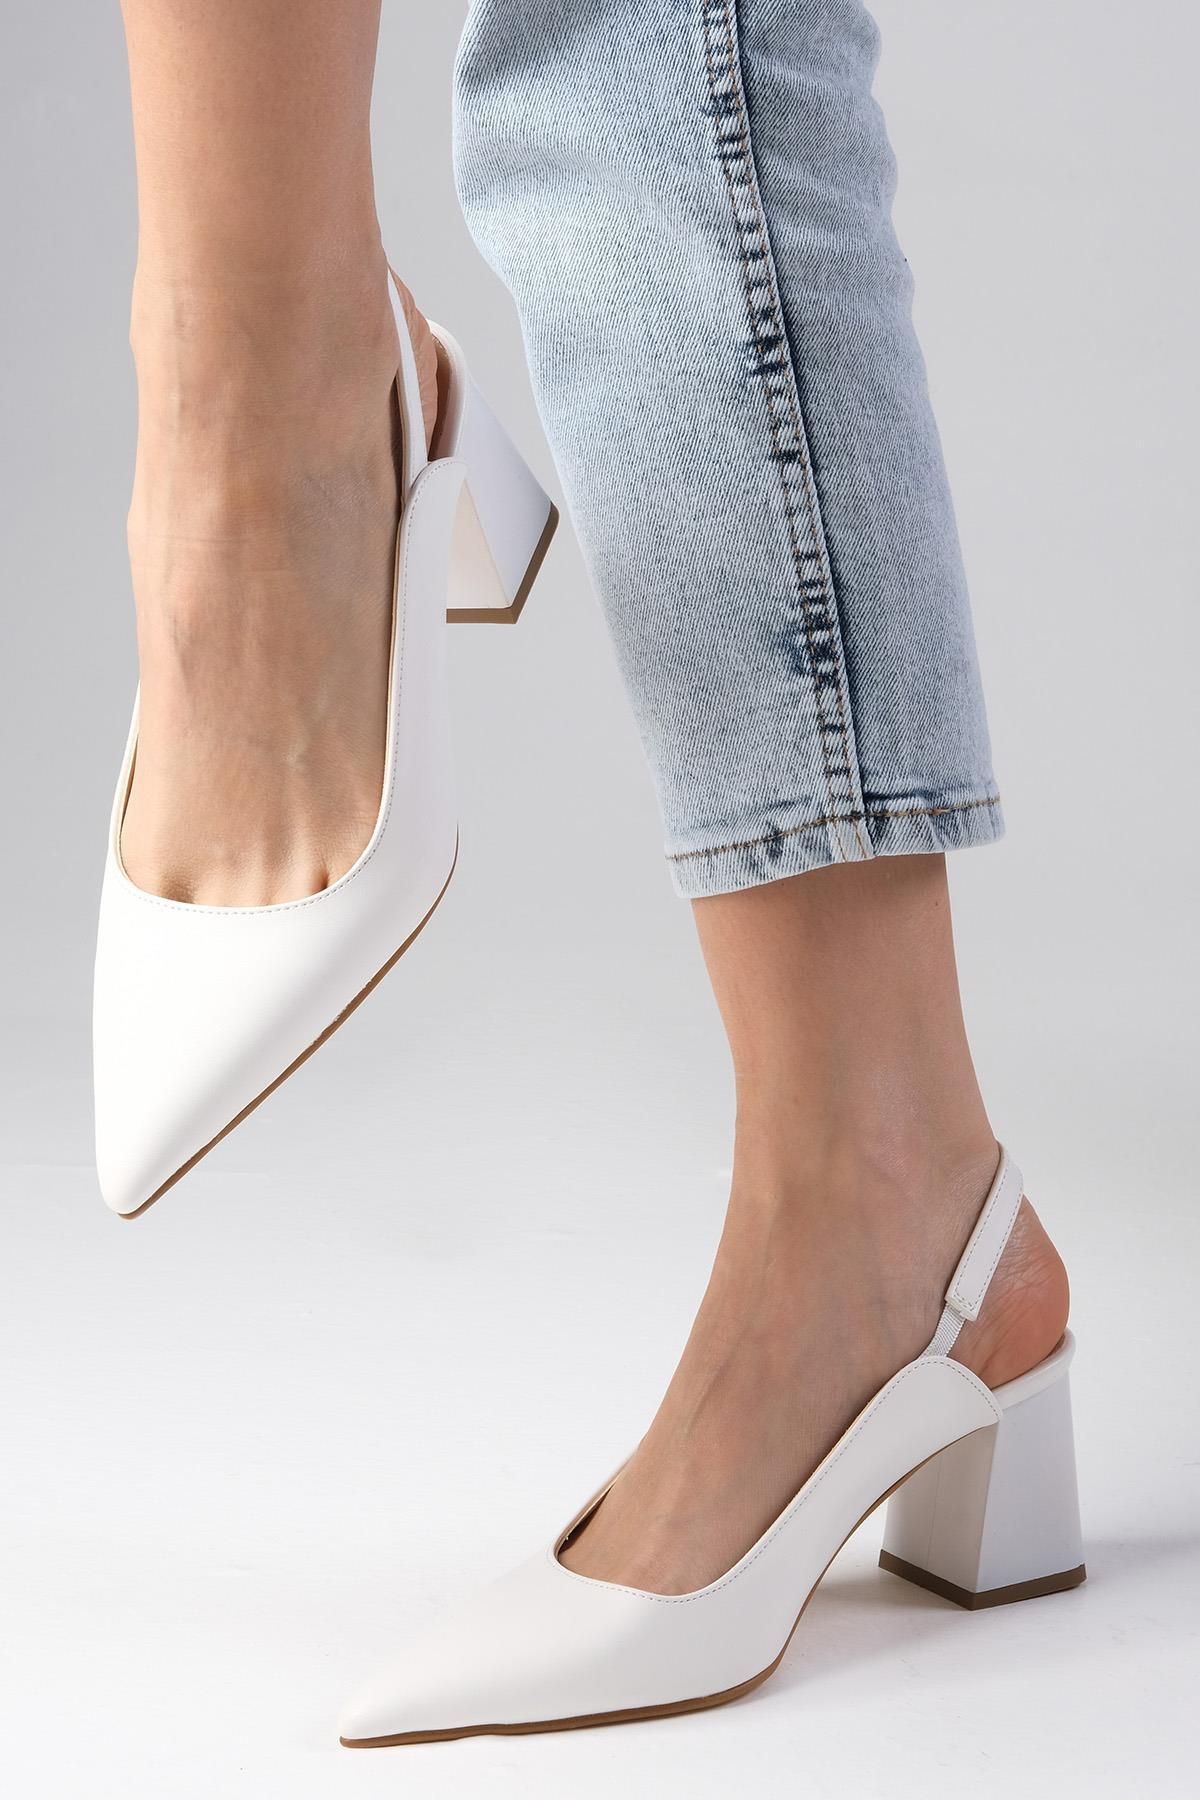 Mio Gusto Anette Beyaz Renk Sivri Burunlu Arkası Açık Kalın Topuklu Ayakkabı